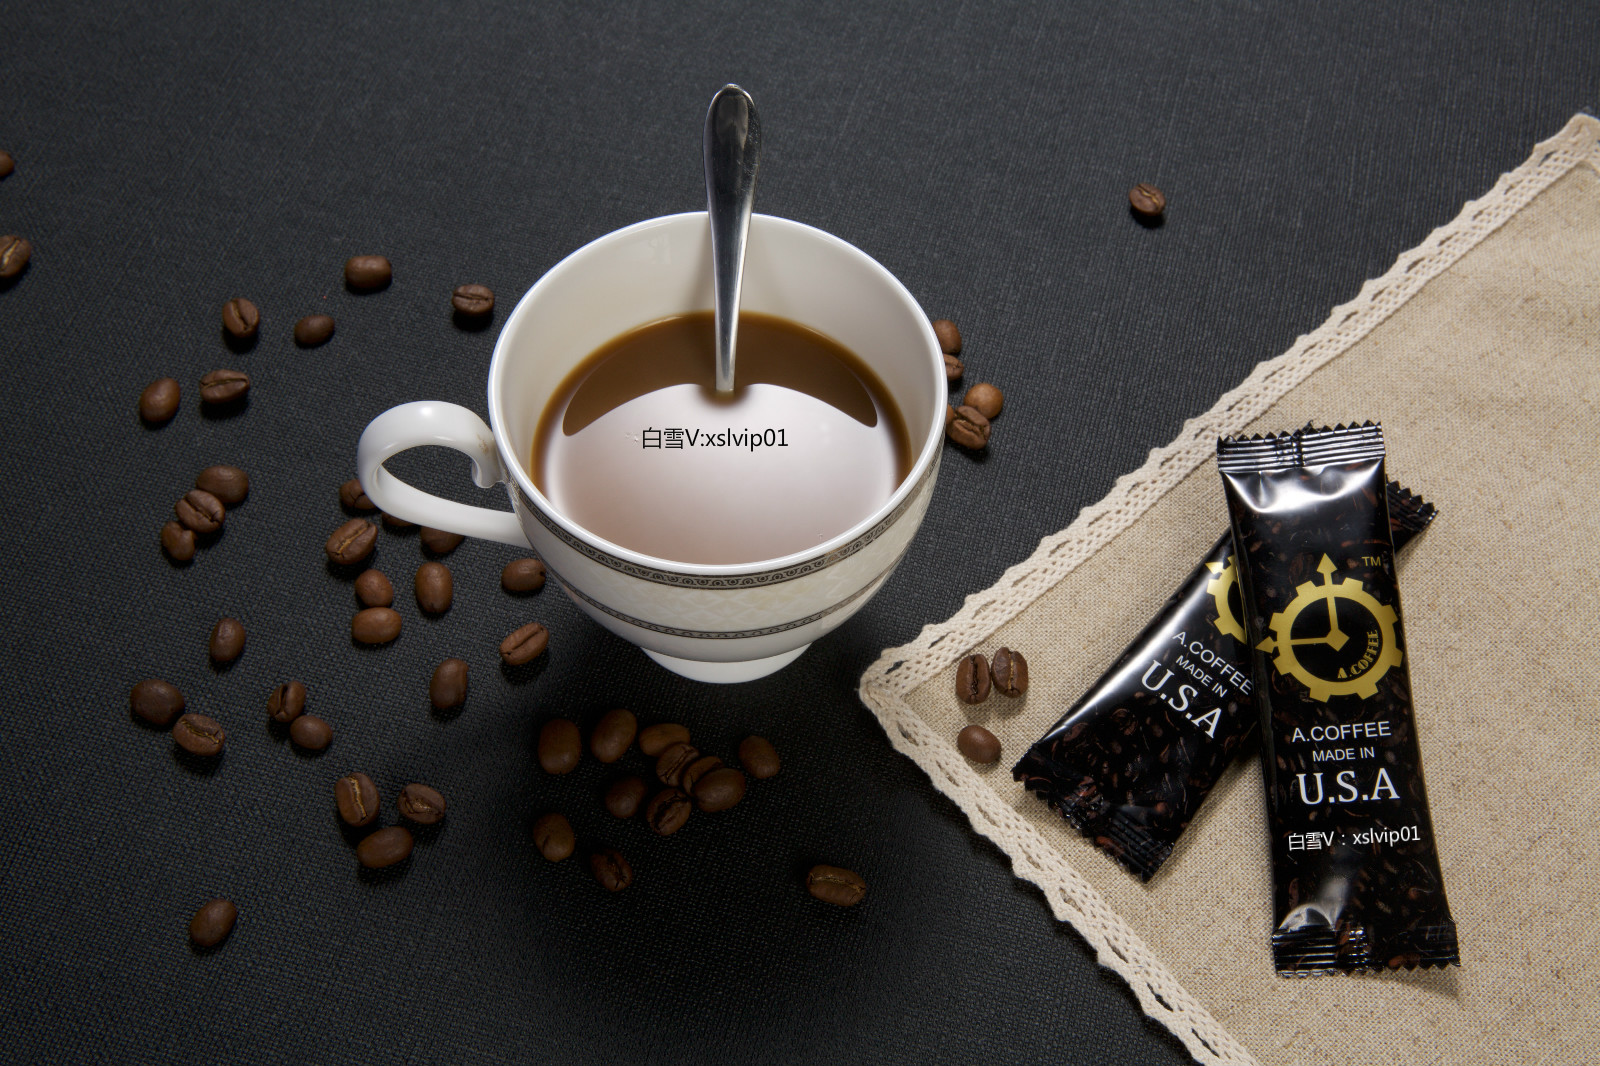 acoffee美国能量咖啡为你的幸福保驾护航!